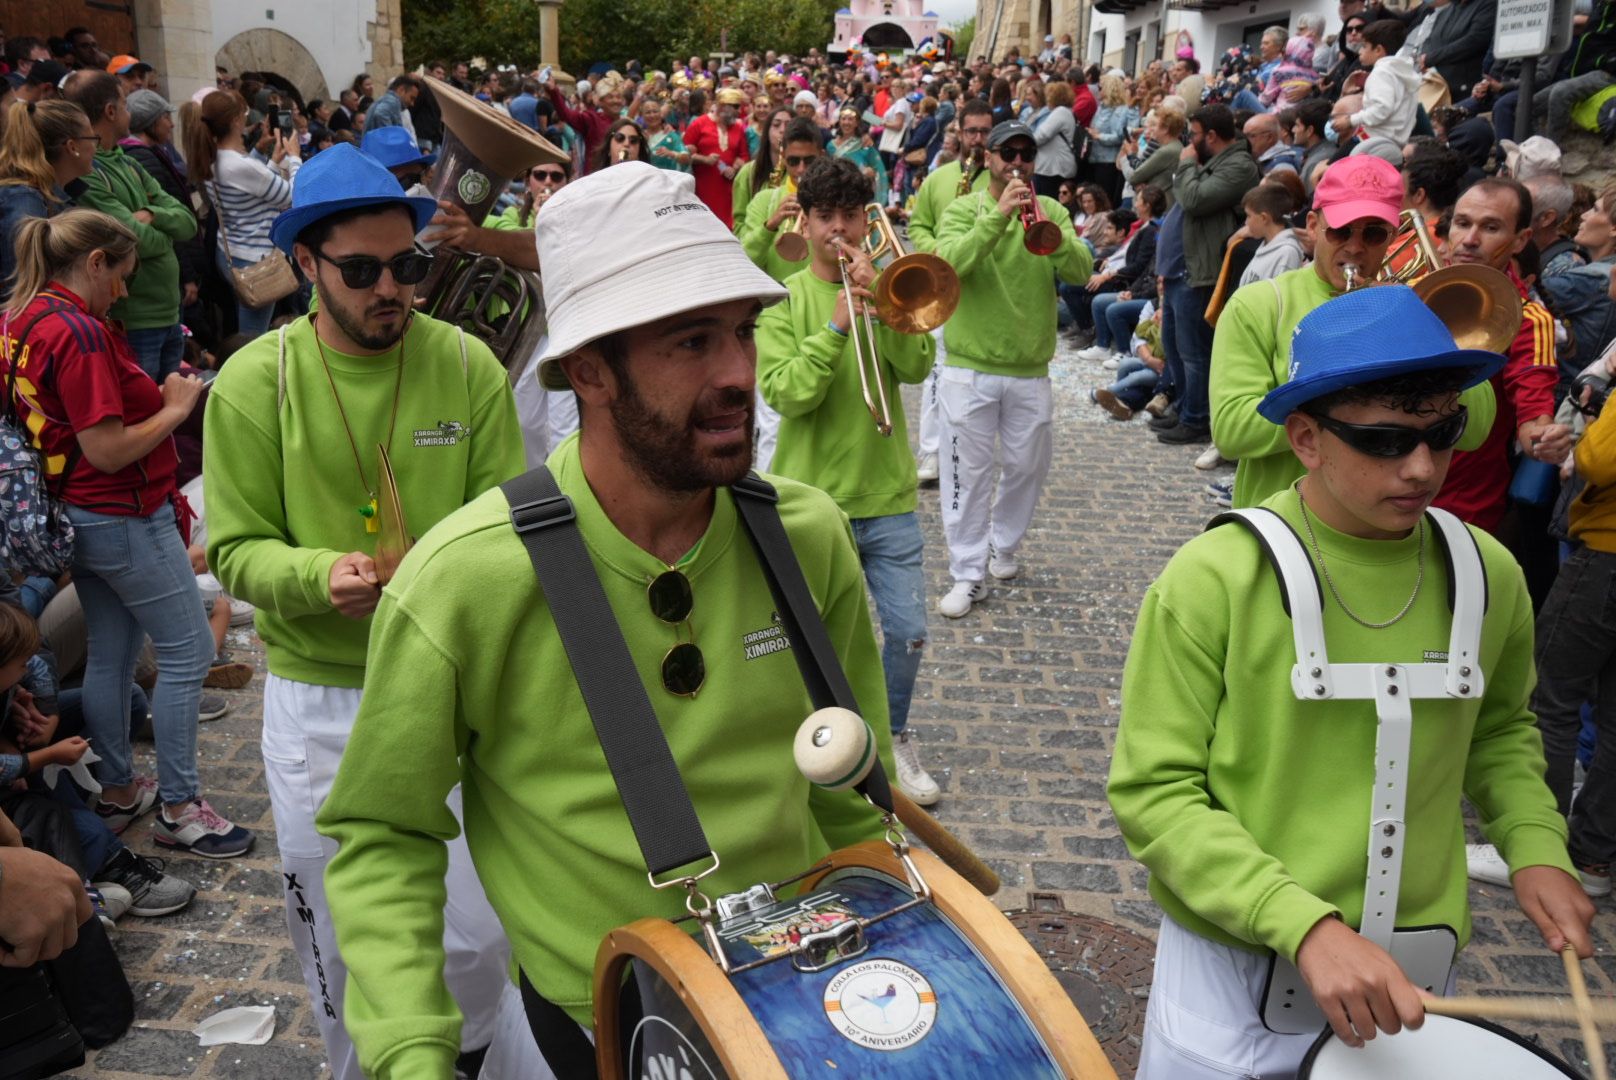 Batalla de confeti y desfile de carrozas en el Anunci de Morella